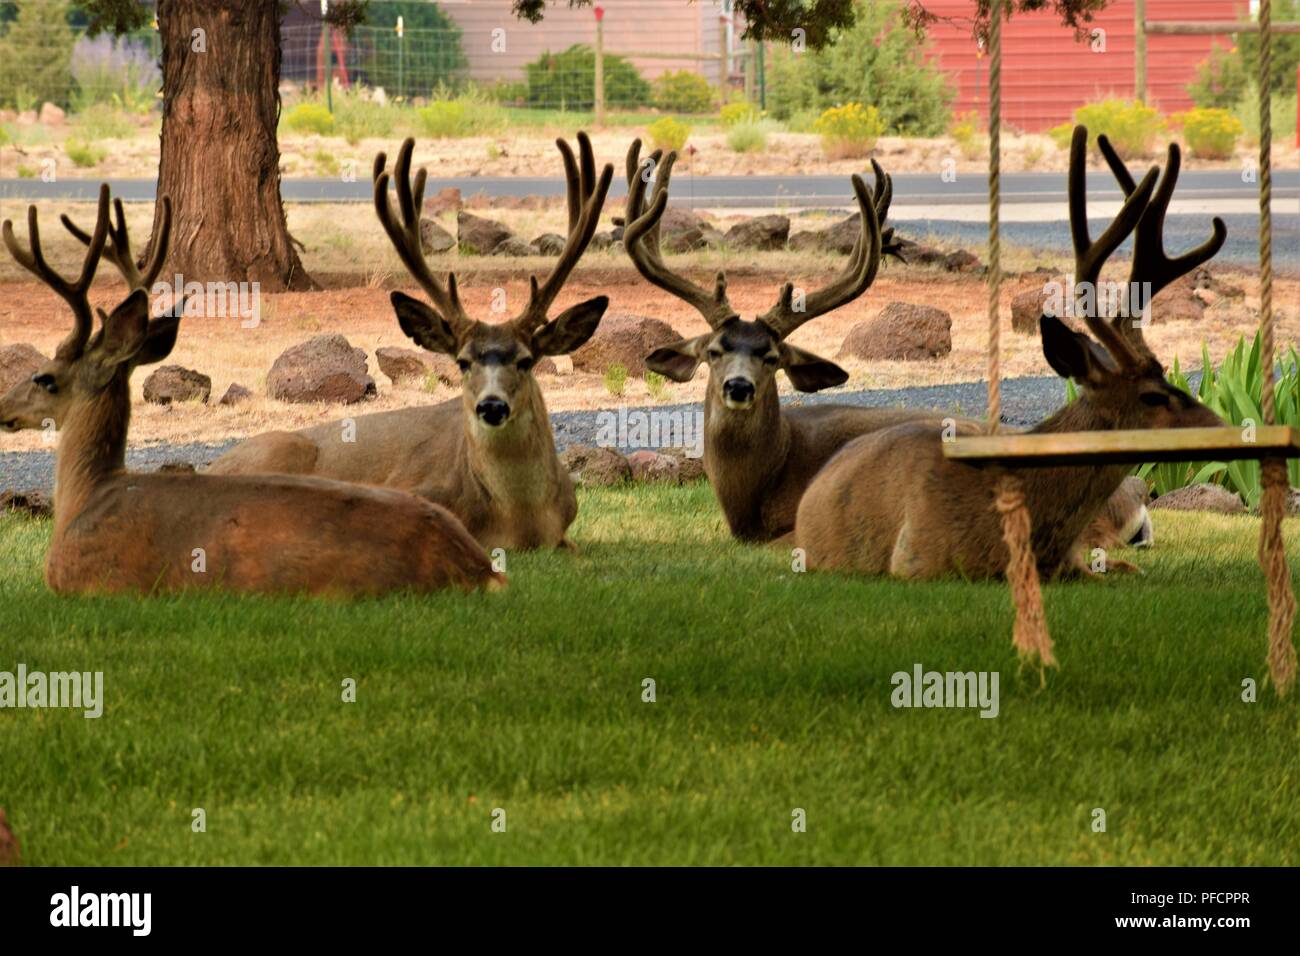 Bachelor Bucks hanging out in the neighborhood. Stock Photo